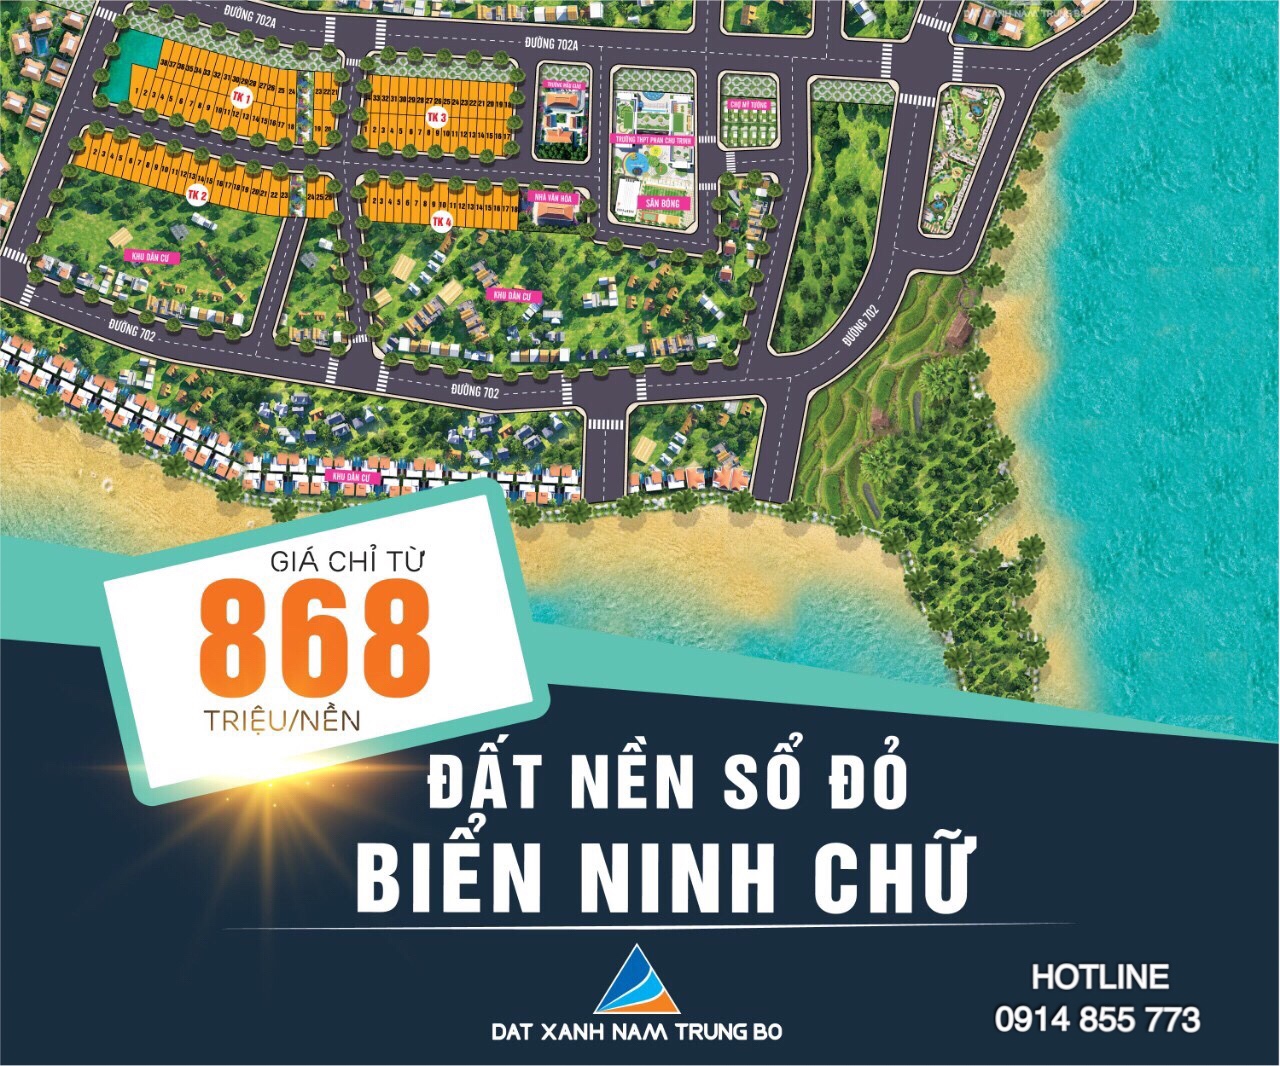 Cơn sốt đất nền tại Ninh Thuận 2019, nhanh tay chọn lô đẹp nhất dự án sắp mở bán Ninh Chữ Sea Gate 10459291